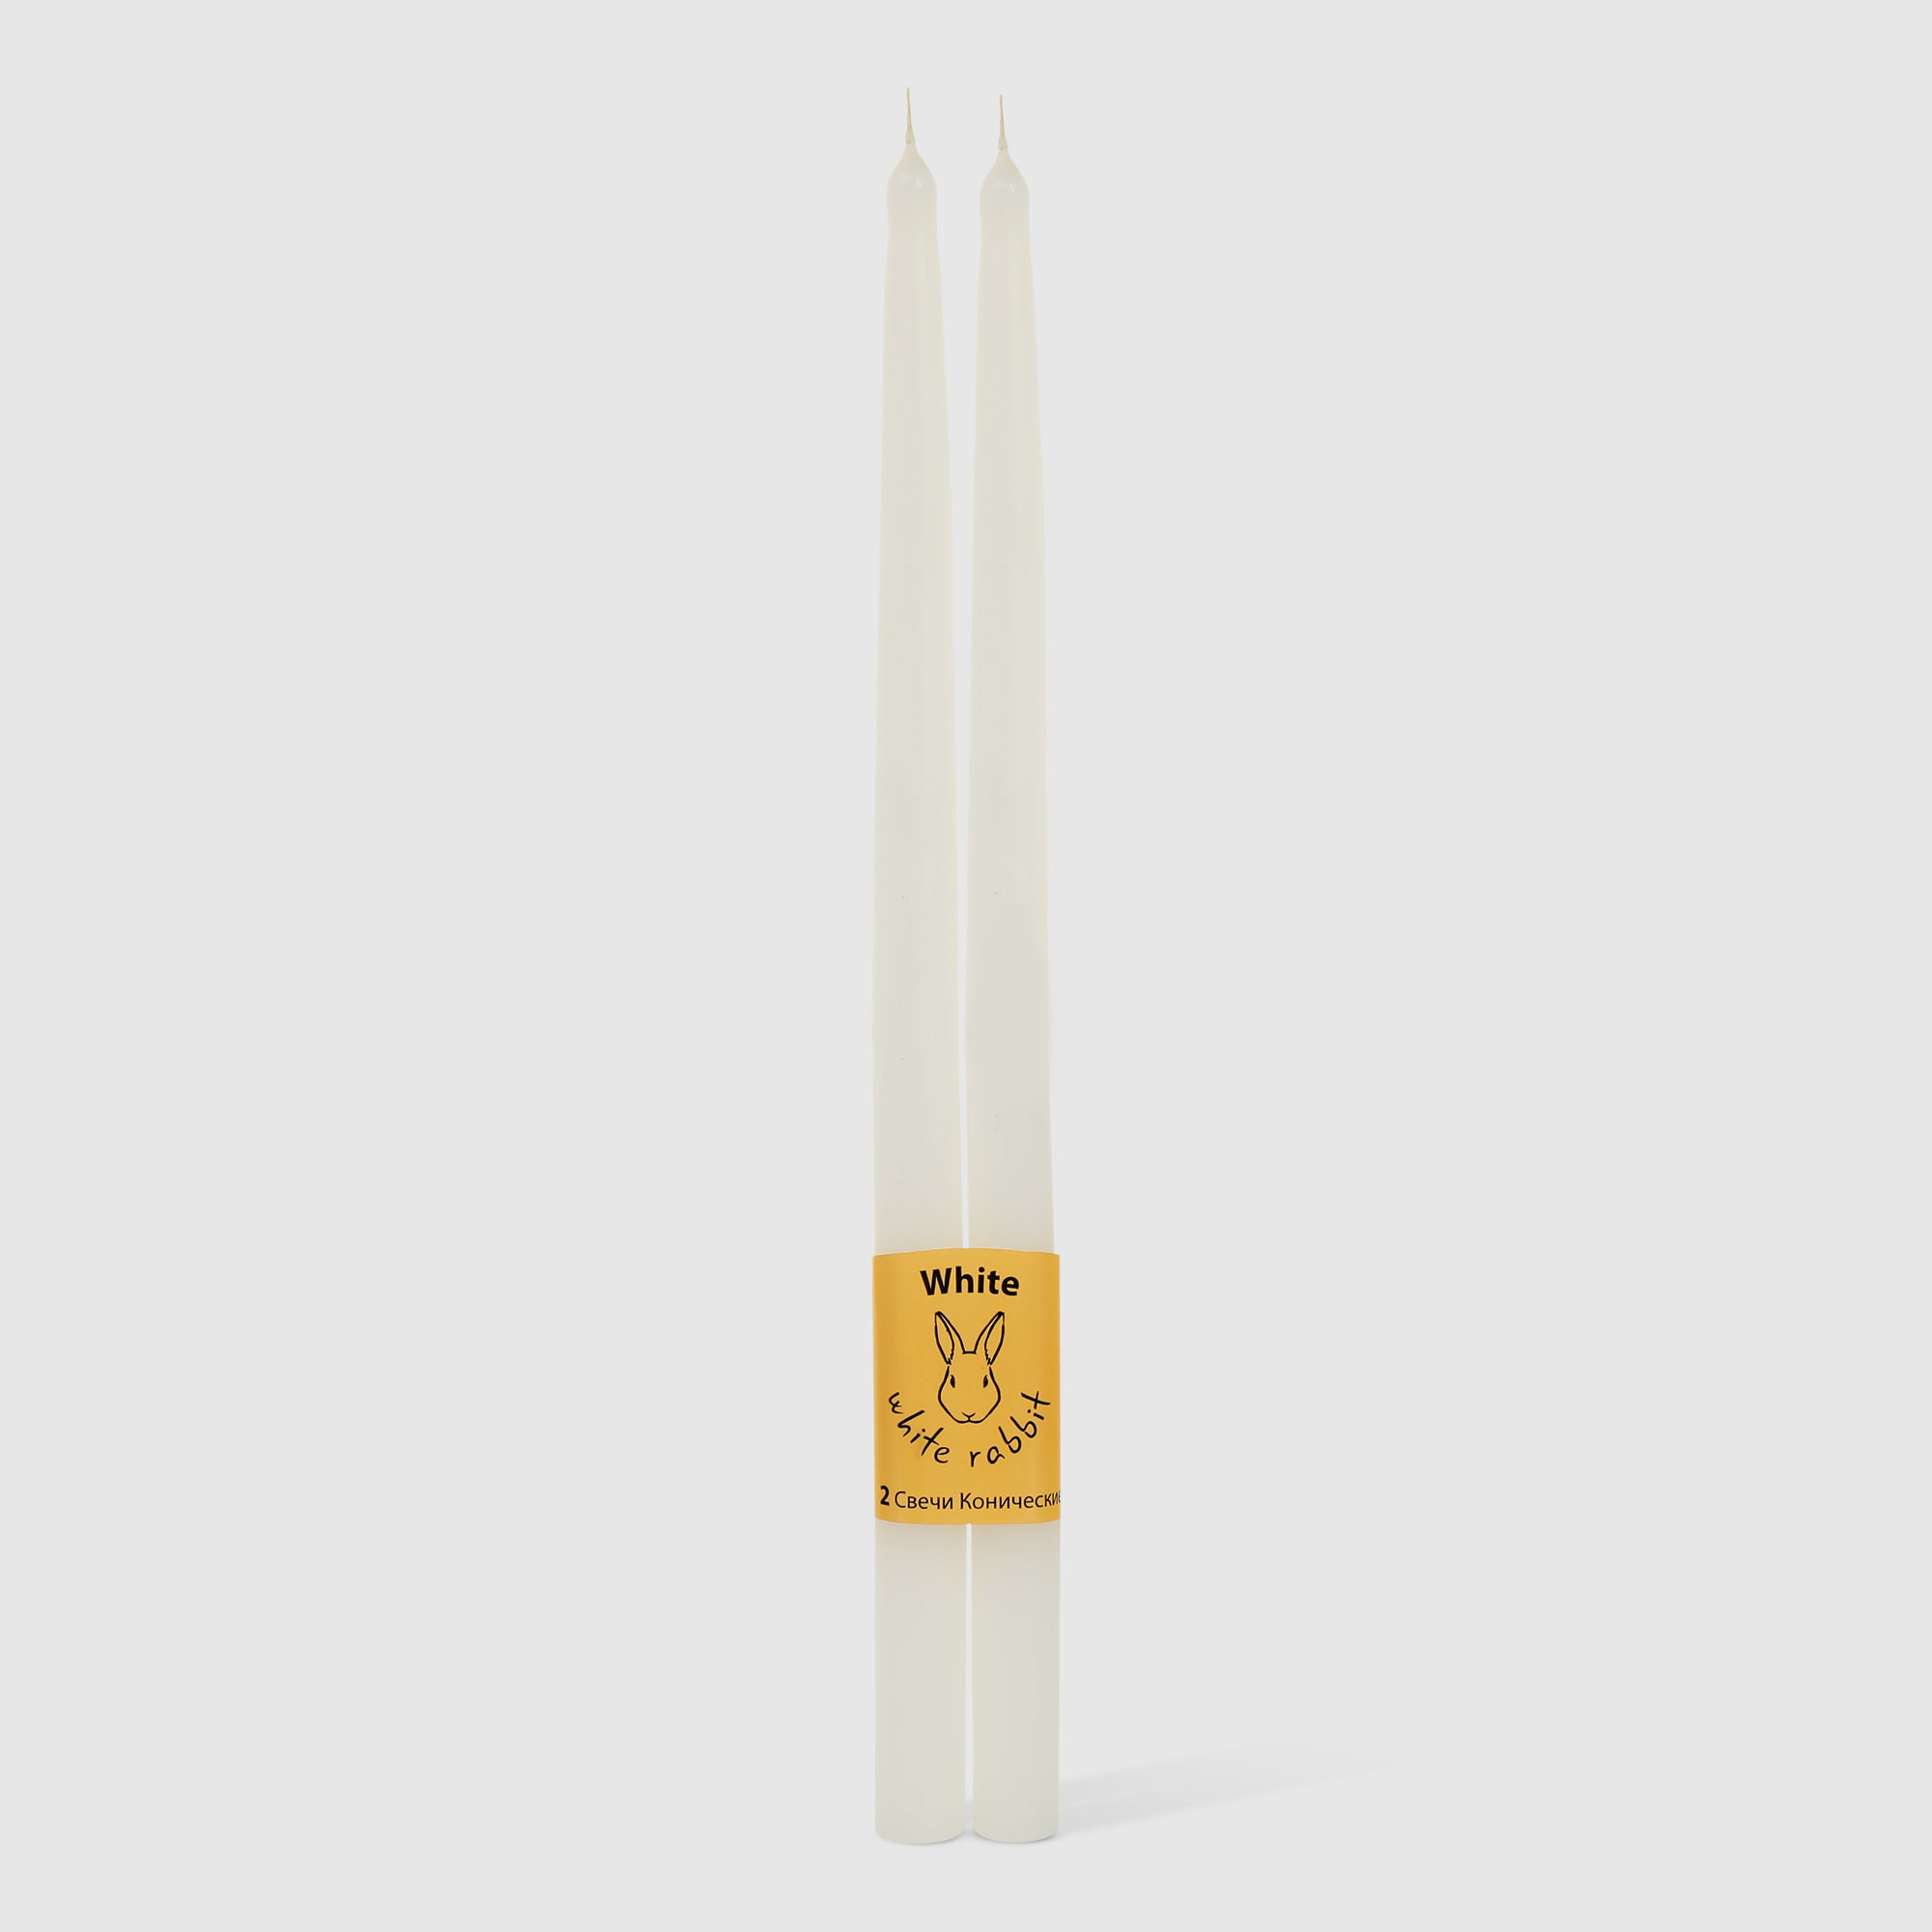 Набор конических свечей White Rabbit белые 30 см 2 шт щипцы для снятия высоковольтных проводов свечей зажигания av steel